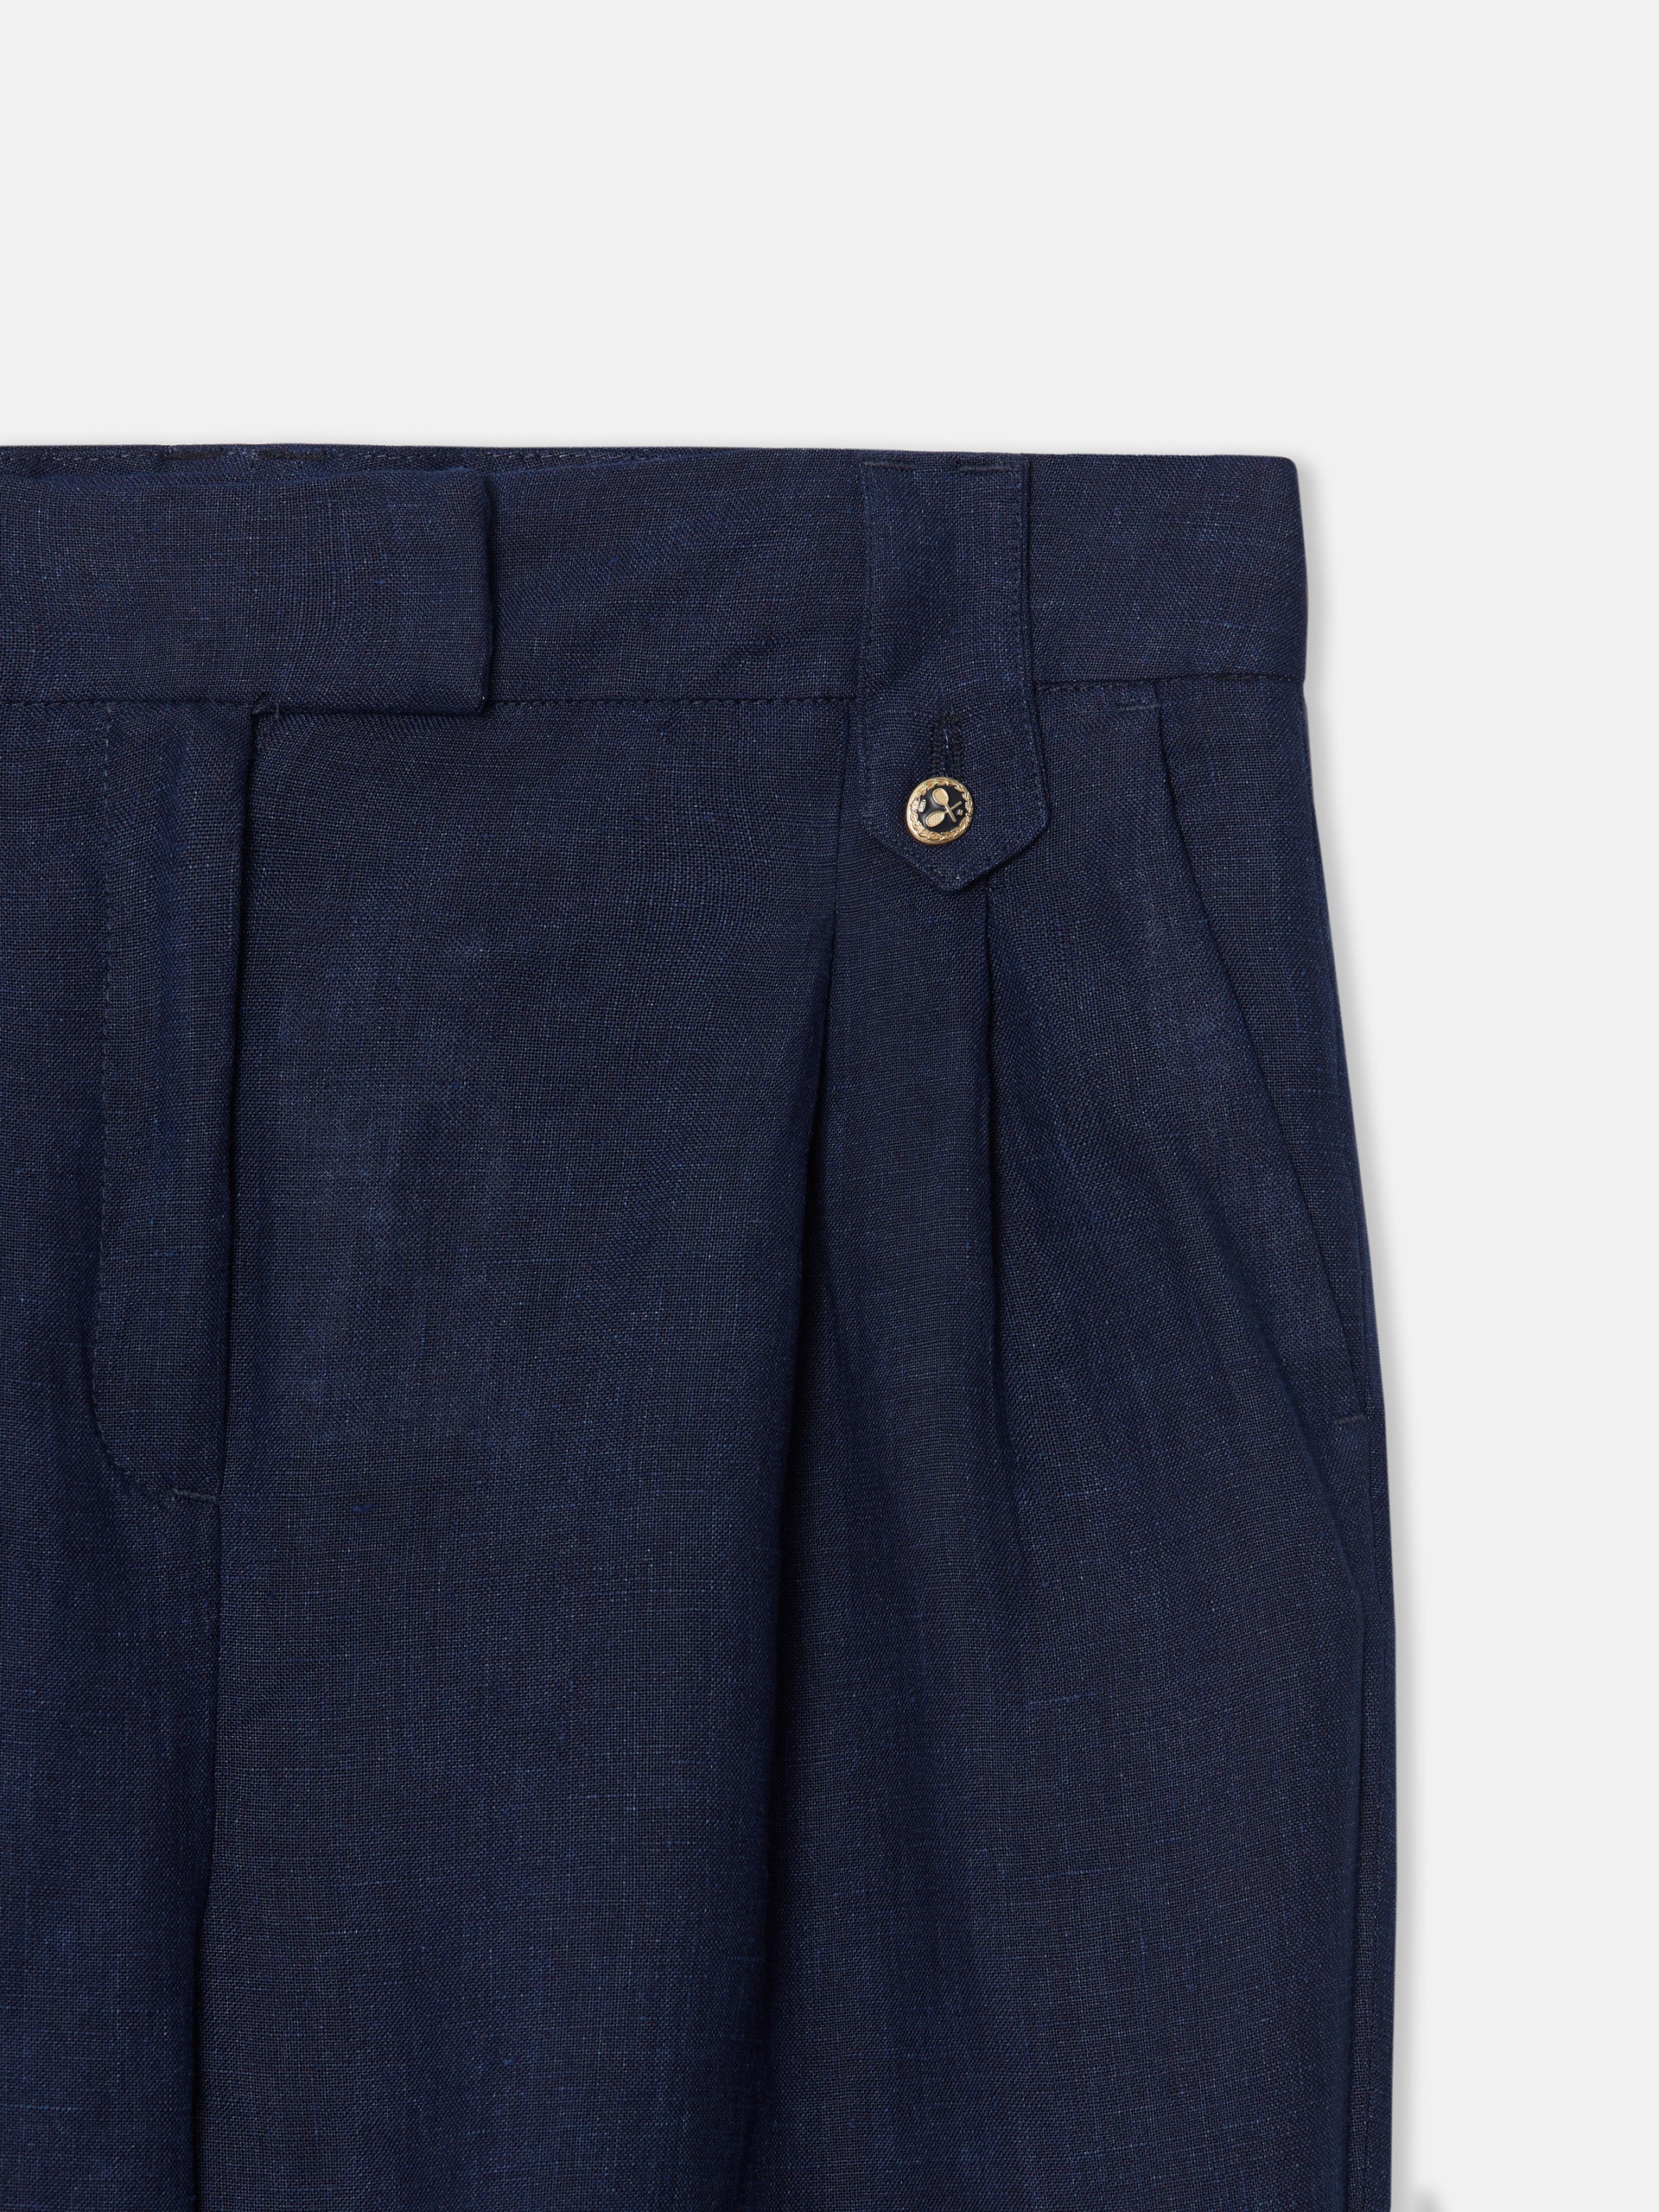 Women's blue linen dress pants